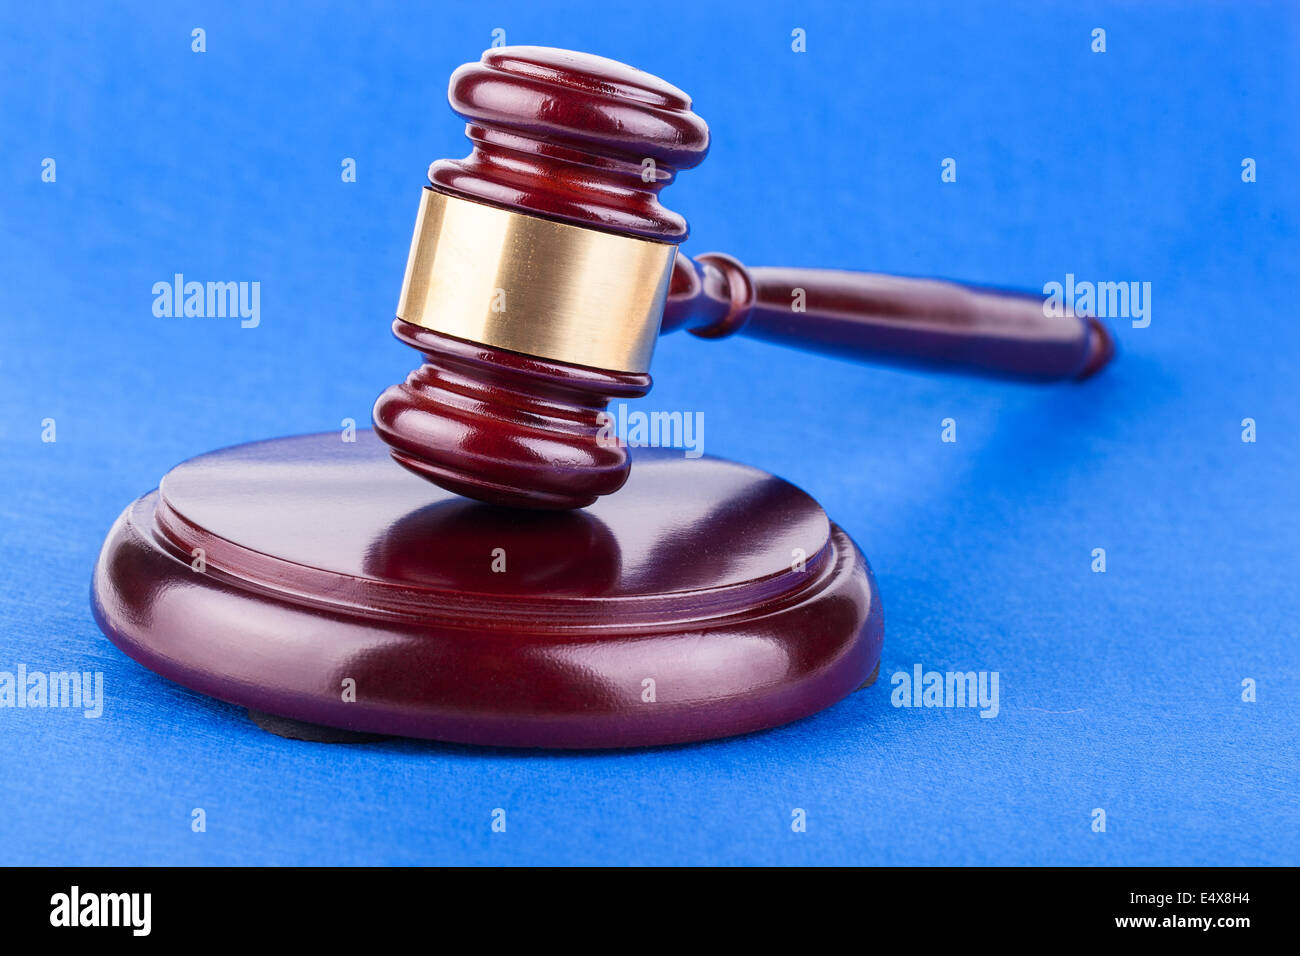 judges gavel on blue background Stock Photo